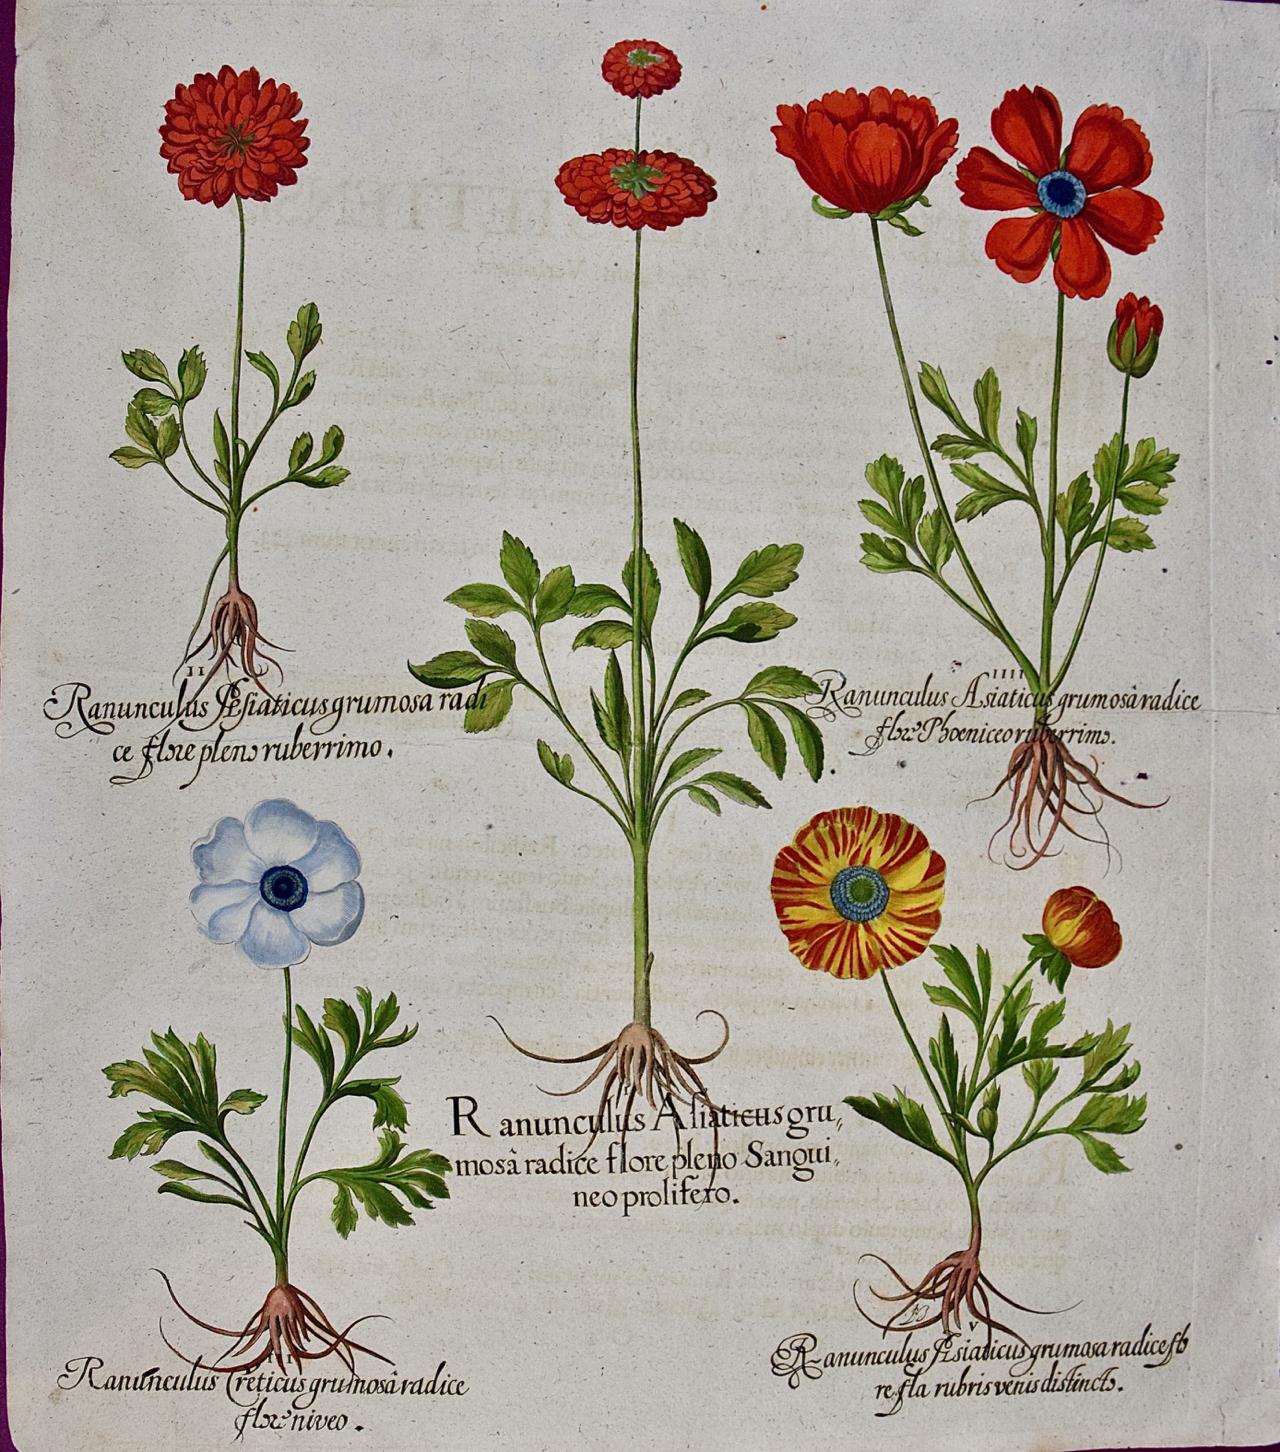 Une coupe de beurre fleurs : Gravure botanique colorée à la main par Besler du 18ème siècle